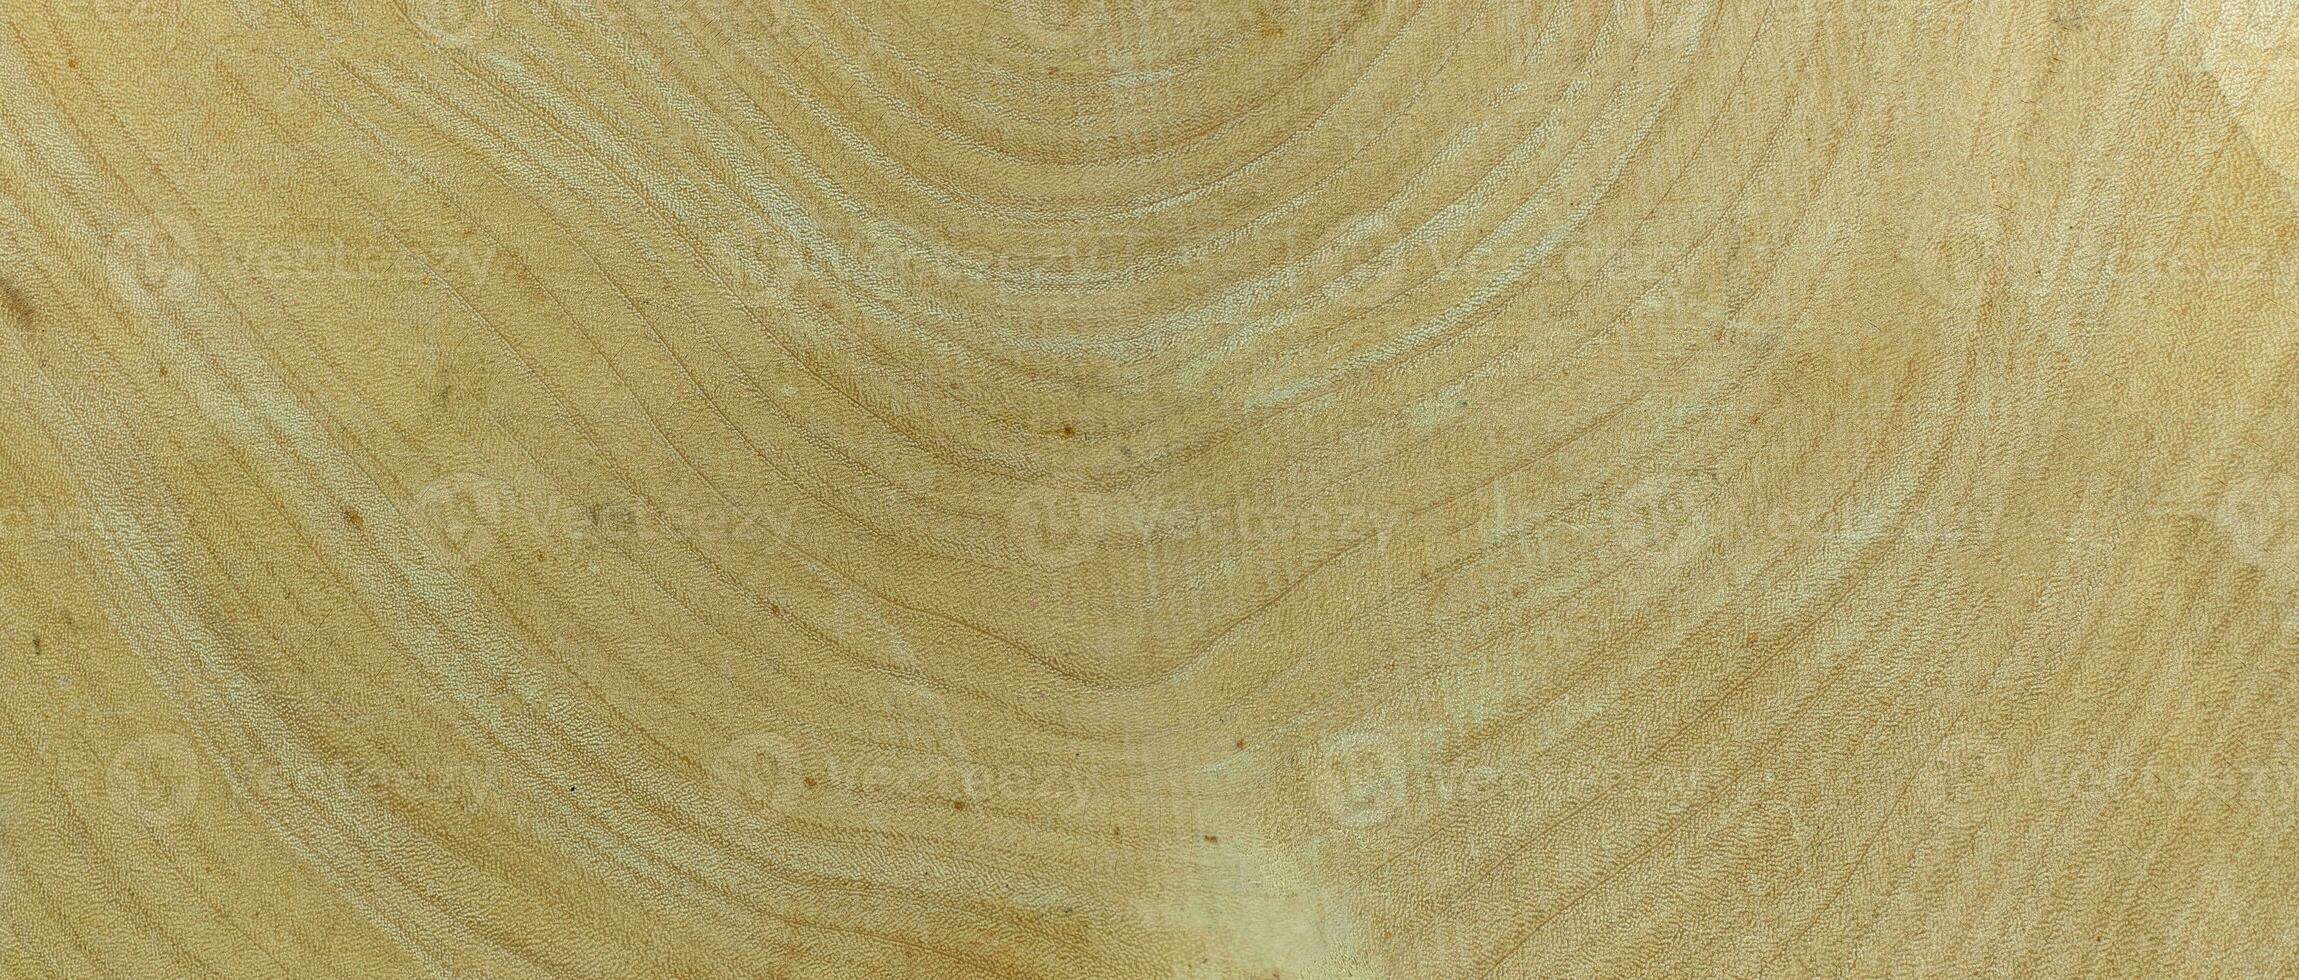 Anneau annuel de bois de tamarin pour la texture de fond photo